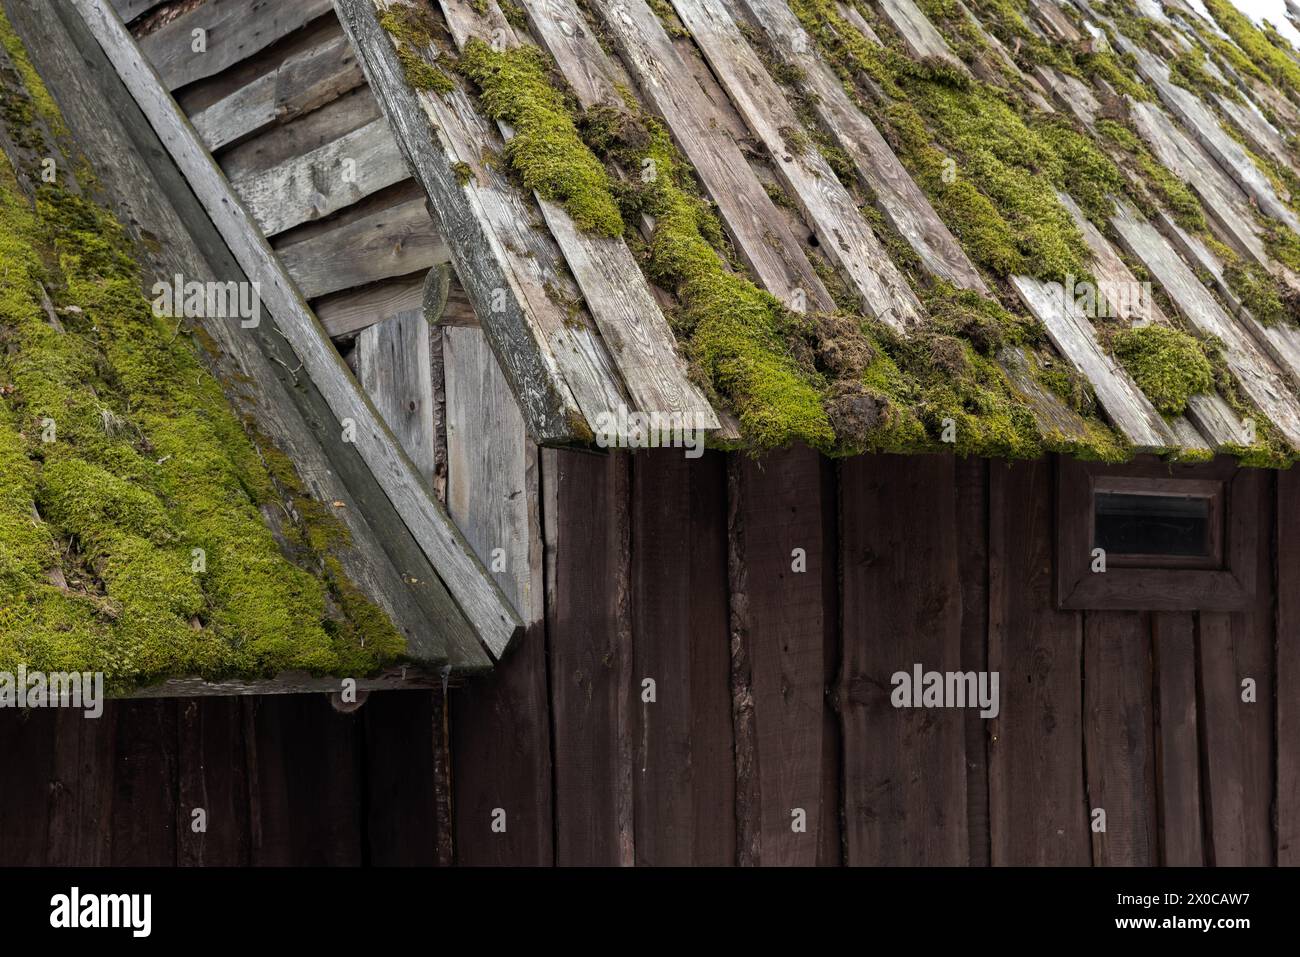 Détails extérieurs de la vieille maison en bois. Toit avec mousse verte et murs faits de planches grises rugueuses, texture de photo de fond Banque D'Images